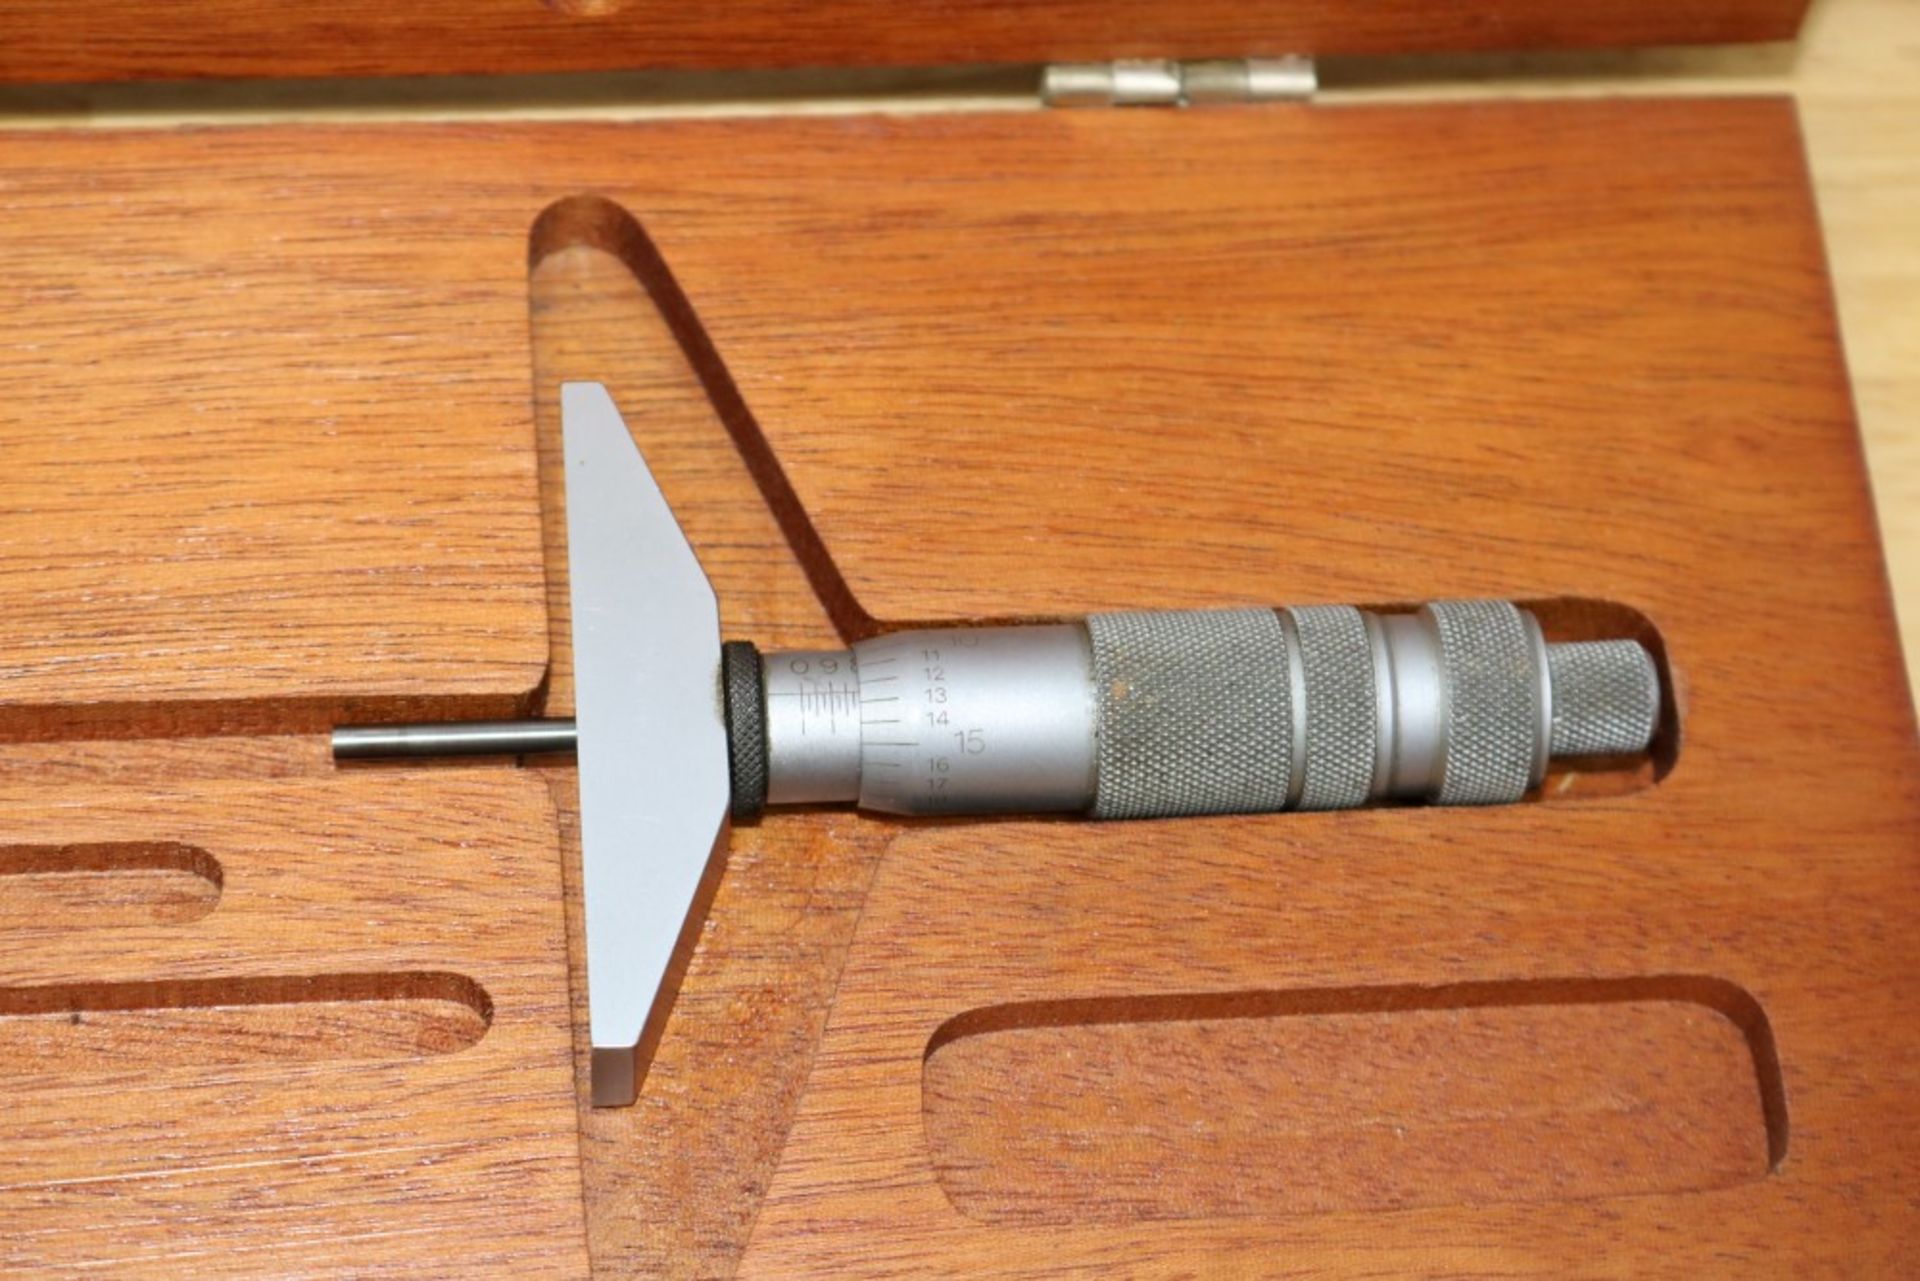 Brown & Sharpe Depth Micrometer 0-3" - Image 3 of 5